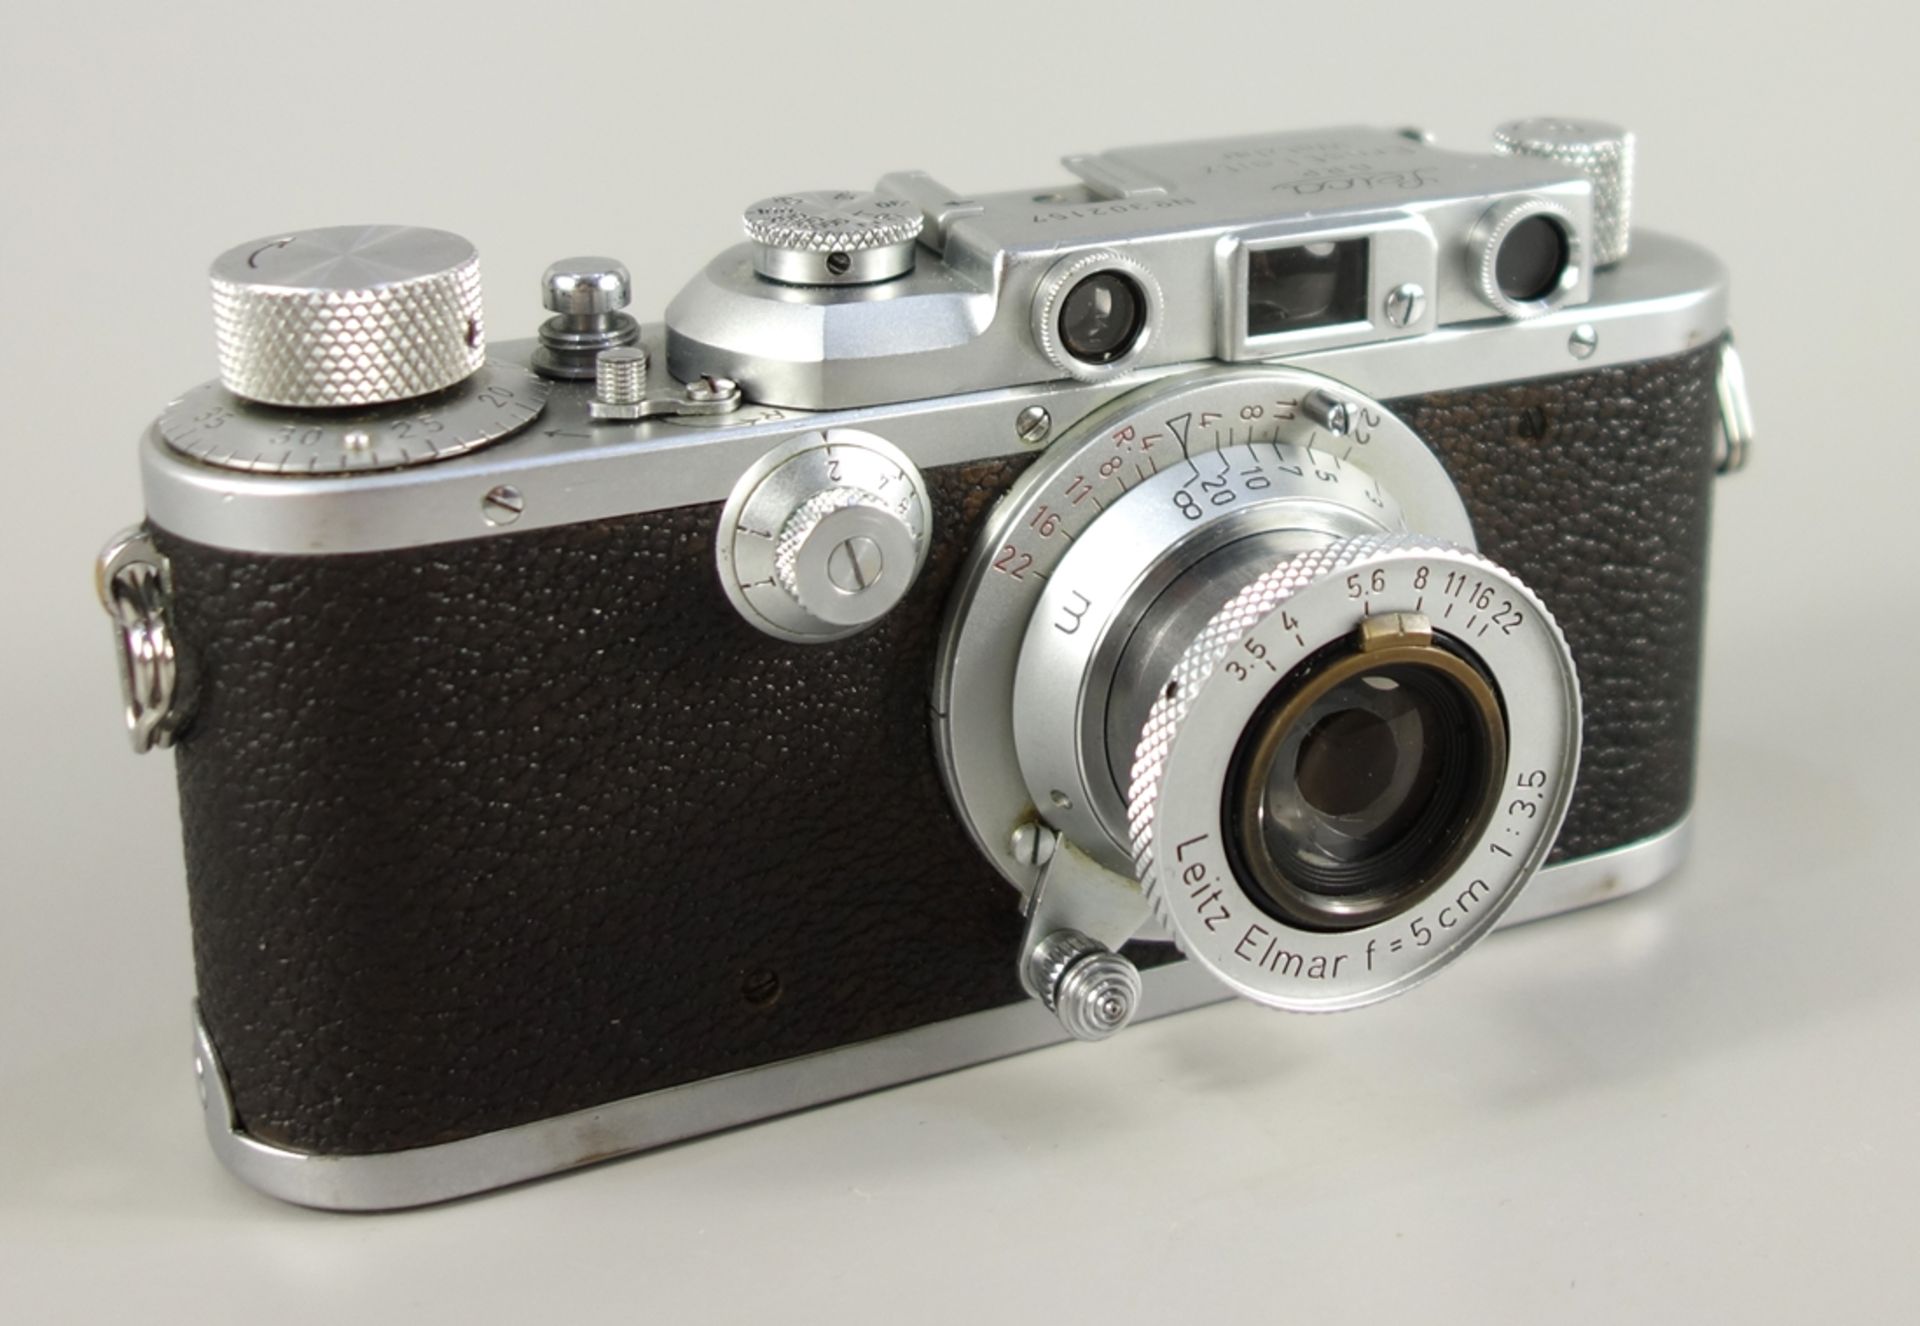 Leica IIIa, Sucherkamera, Ernst Leitz Wetzlar, 1938, Serien-Nr. 302157, sogenannte Schraubleica